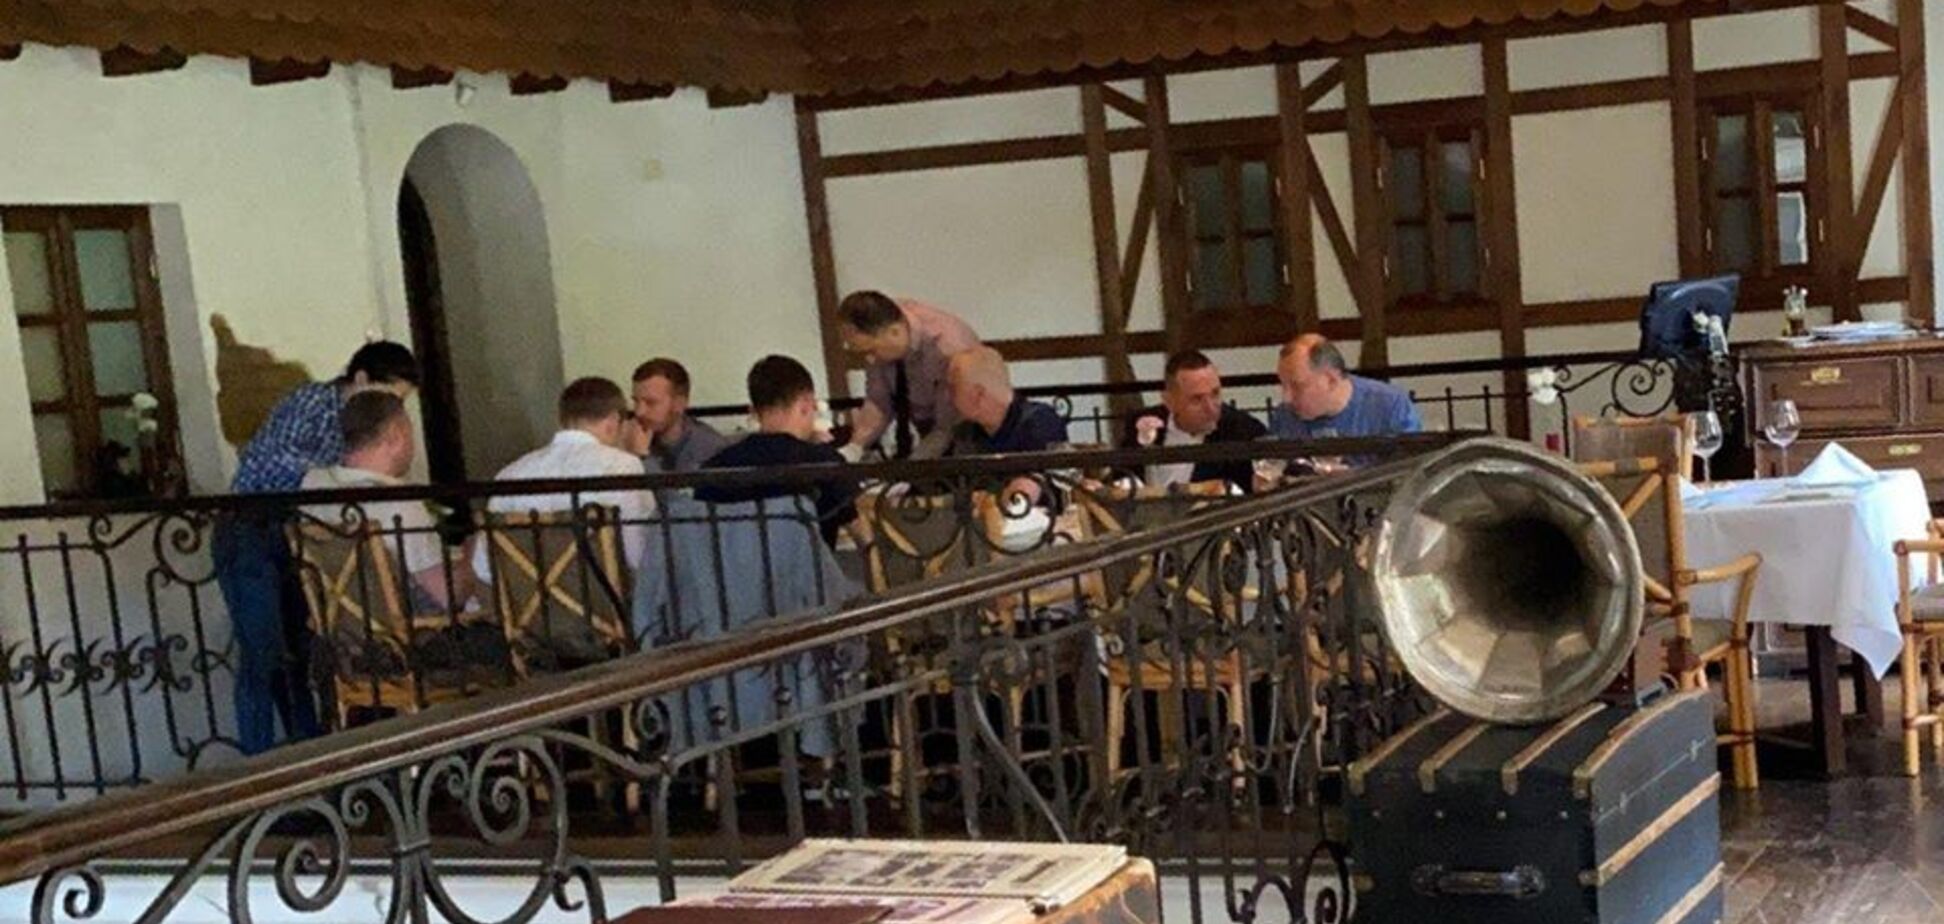 У Дніпрі нардепів від 'Слуги народу' зняли в ресторані під час карантину. Фото